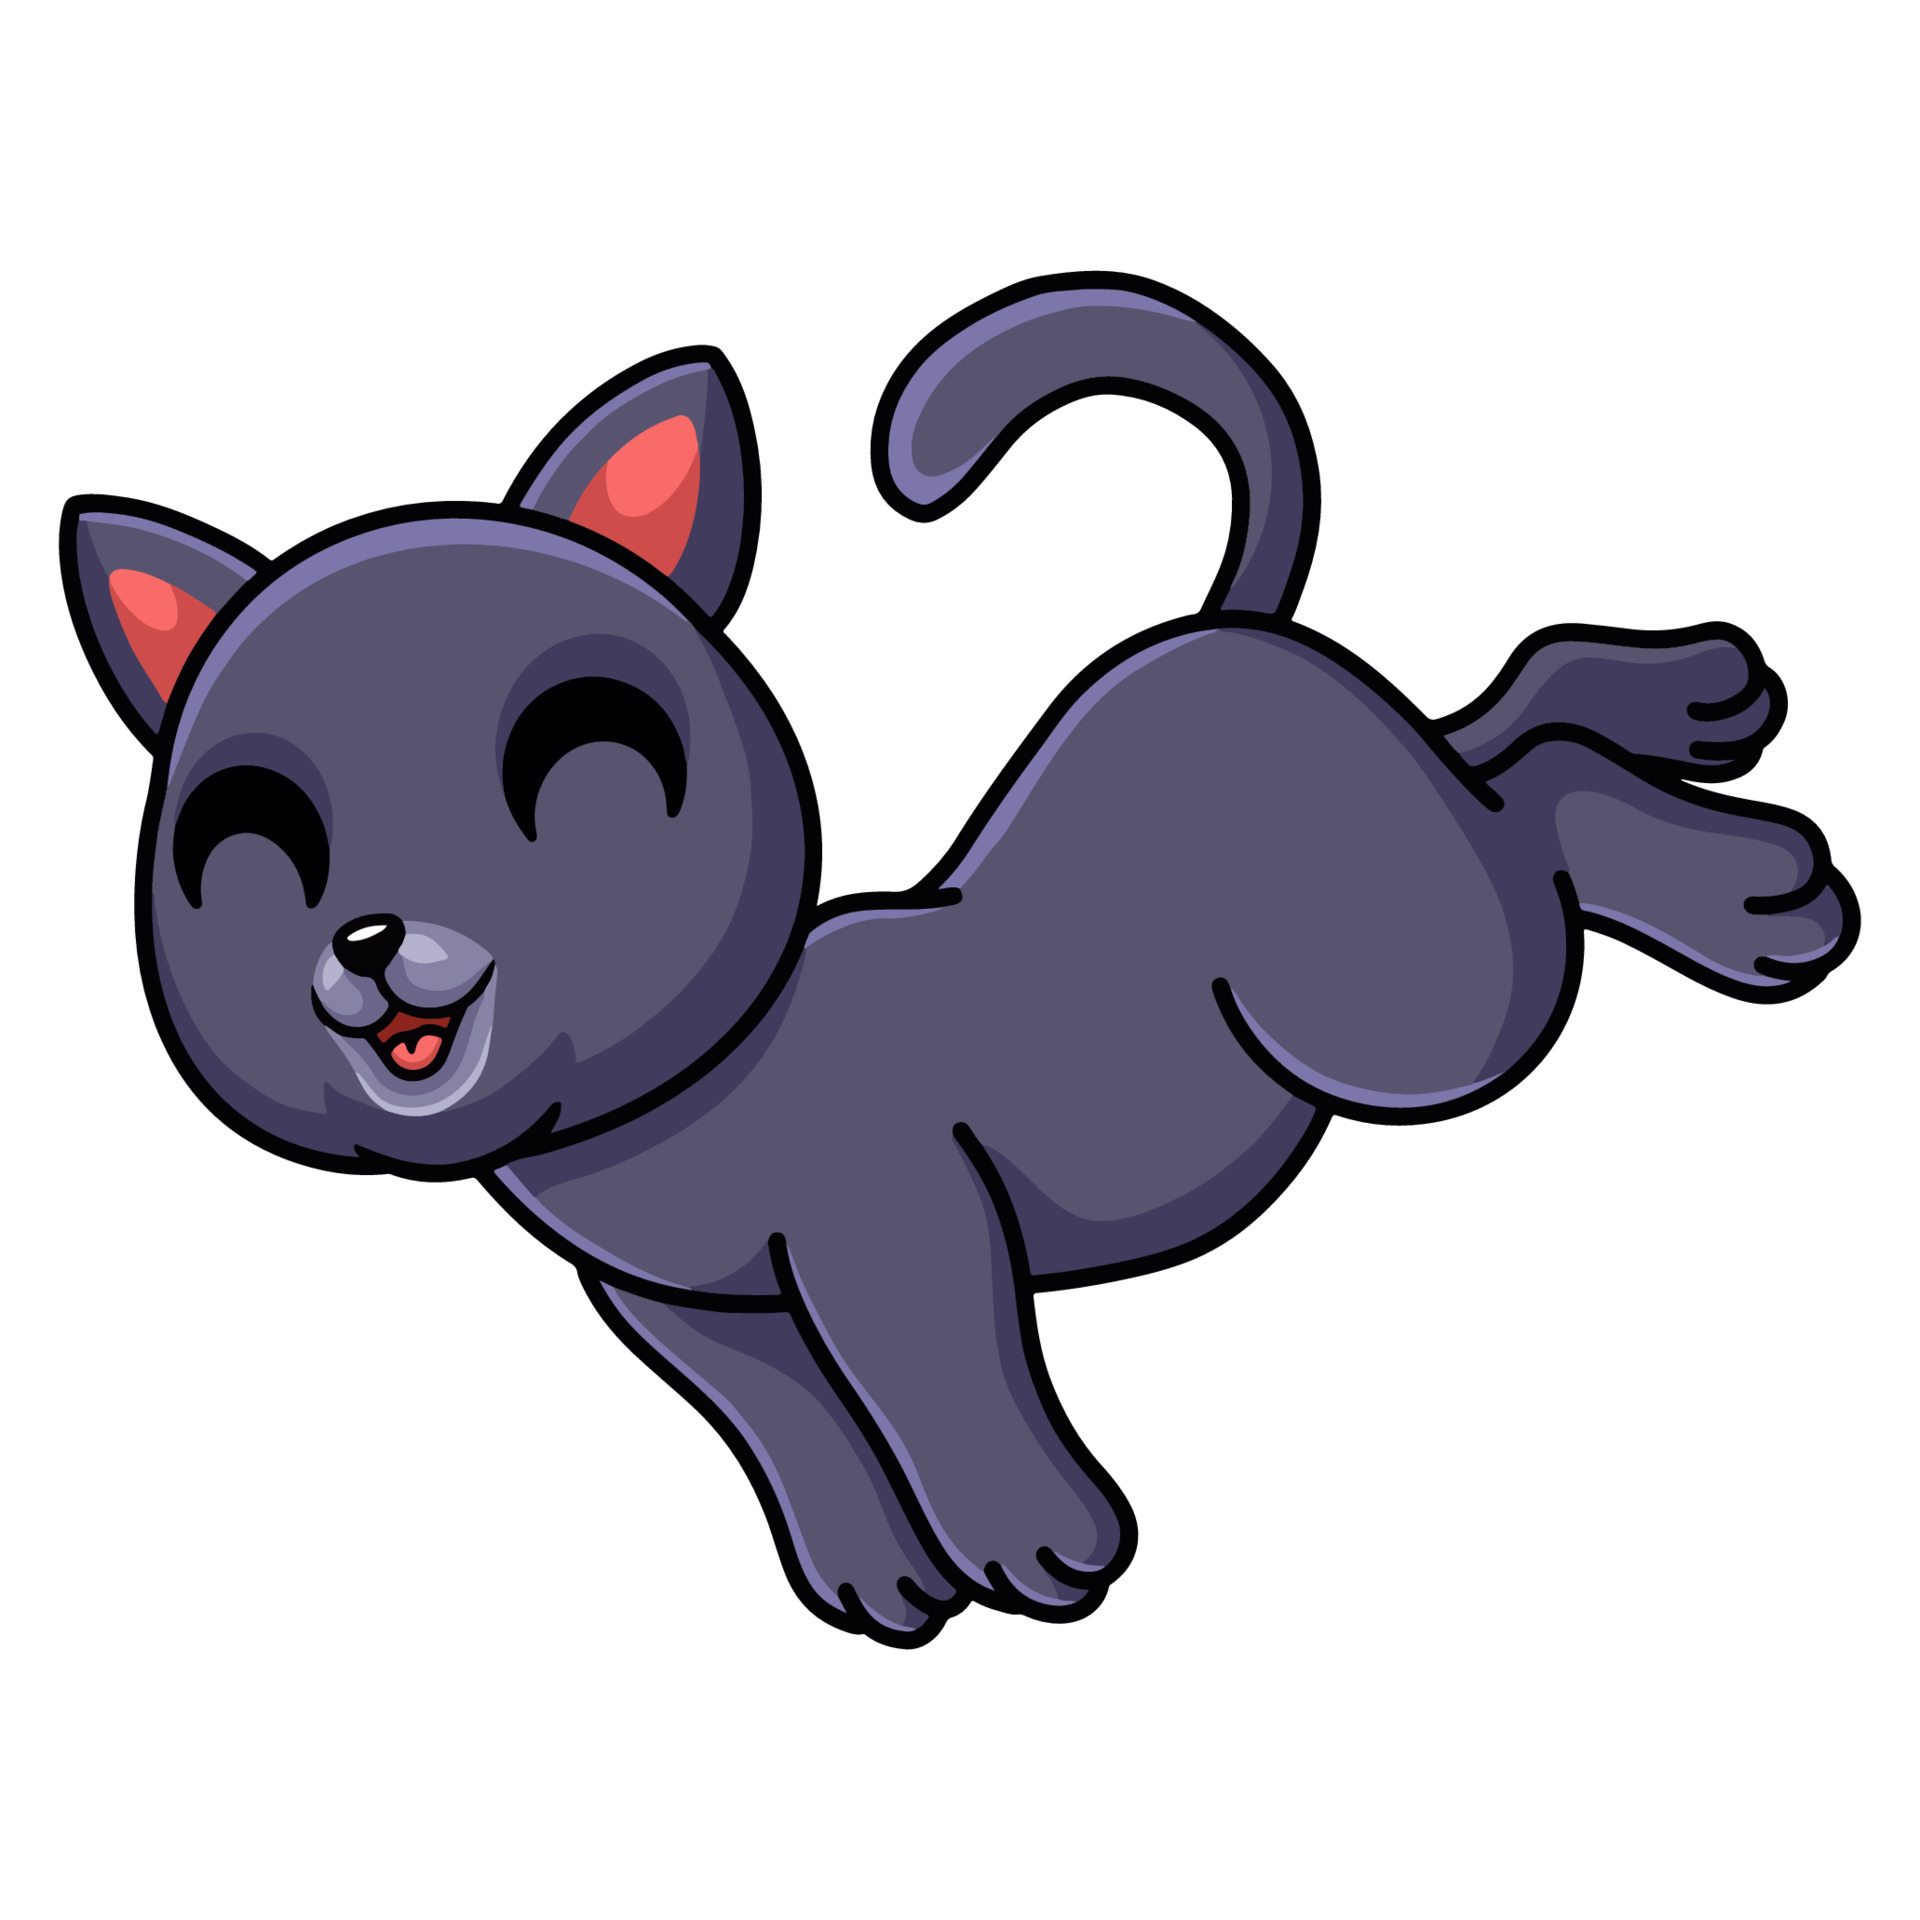 Cute chartreux cat cartoon jumping 16613862 Vector Art at Vecteezy